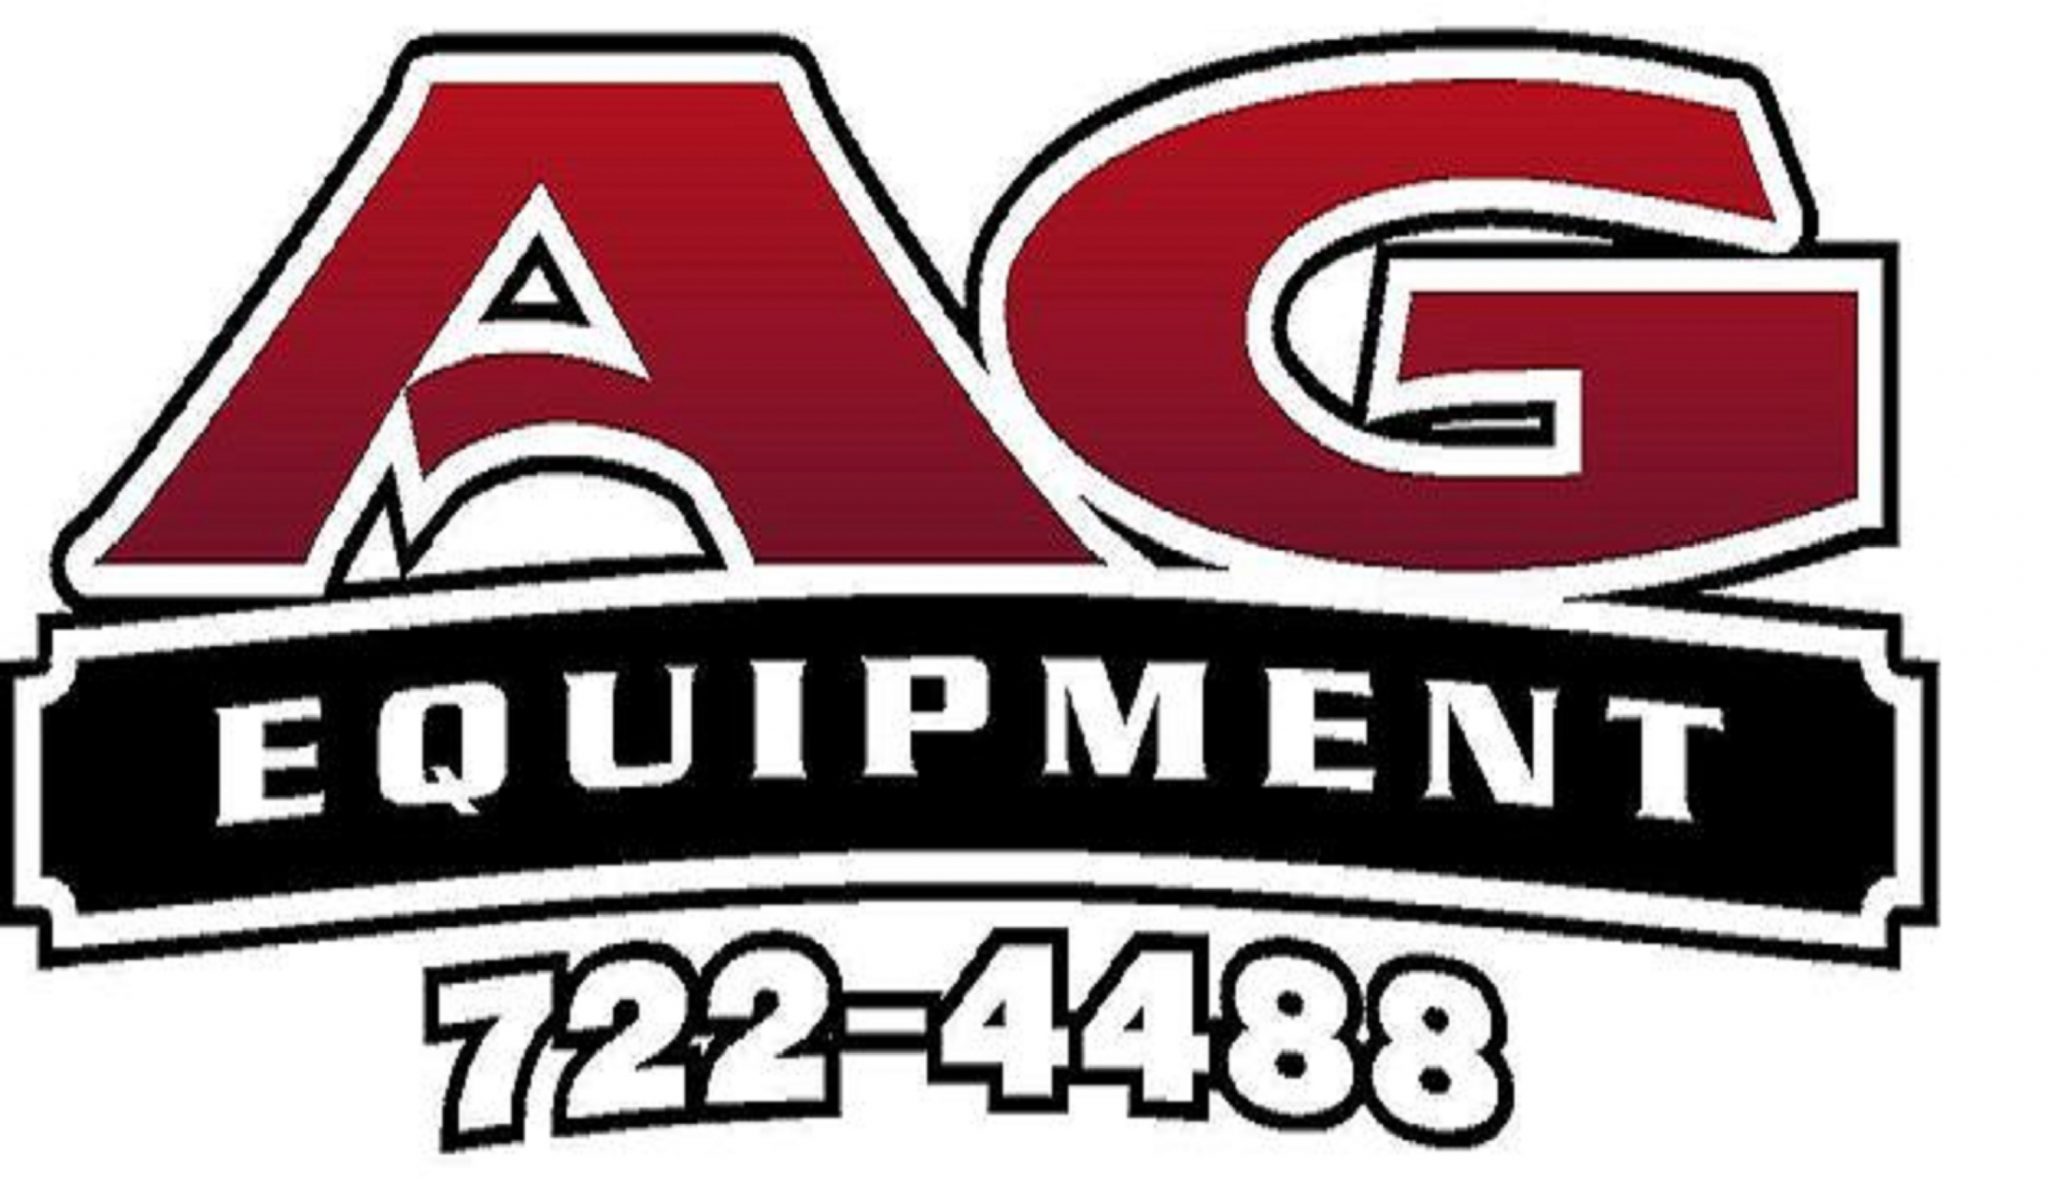 AG Equipment